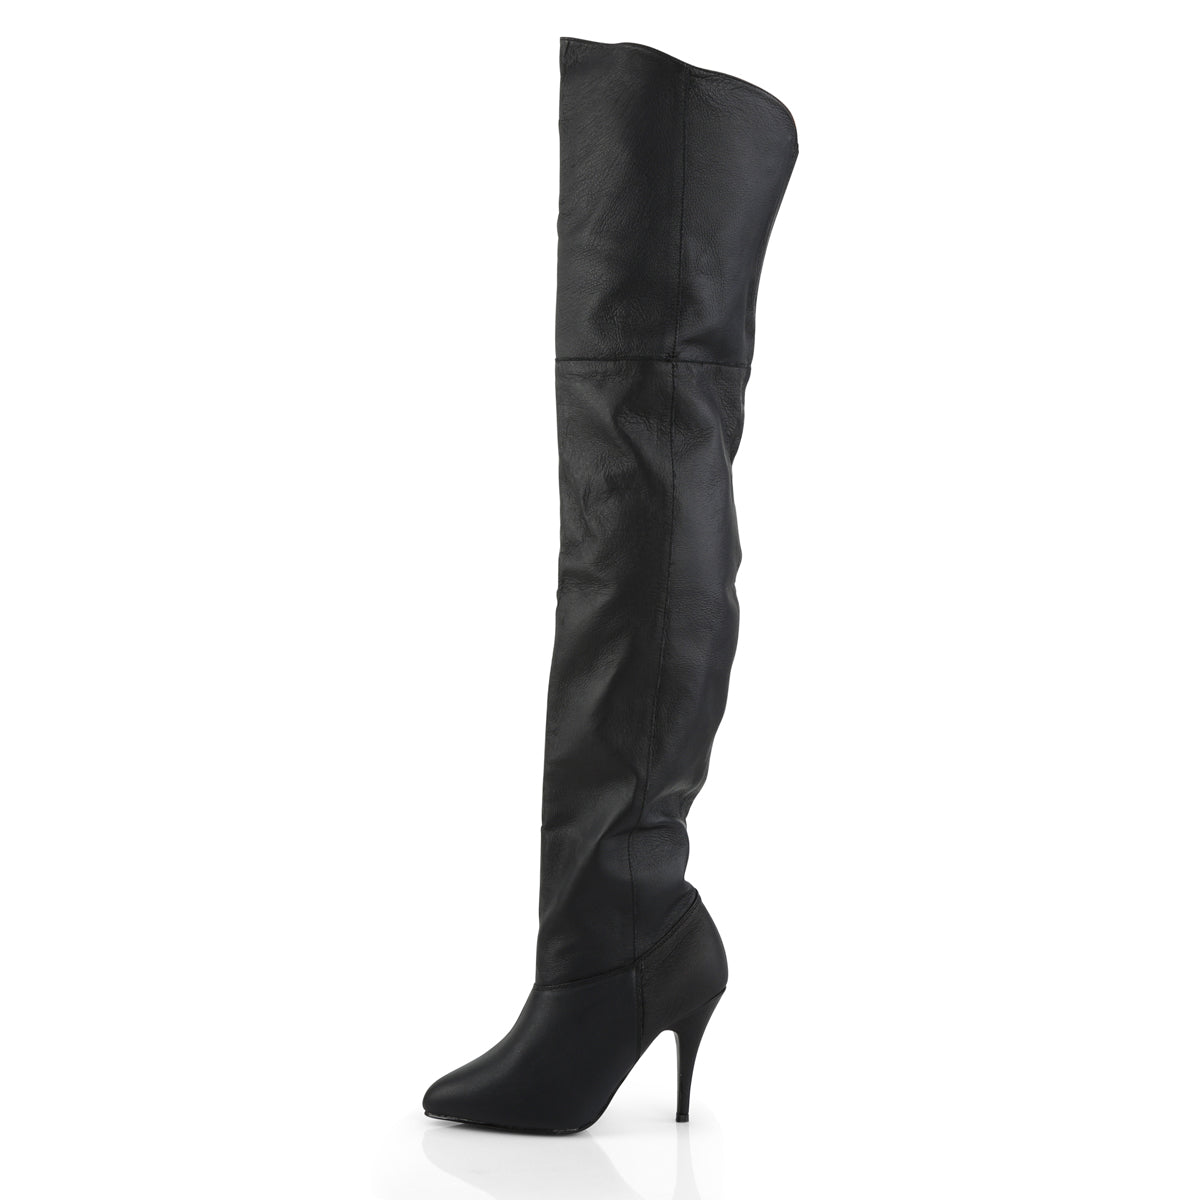 LEGEND-8868 Pleaser 4" Heel Black Leather Fetish Footwear-Pleaser- Sexy Shoes Pole Dance Heels